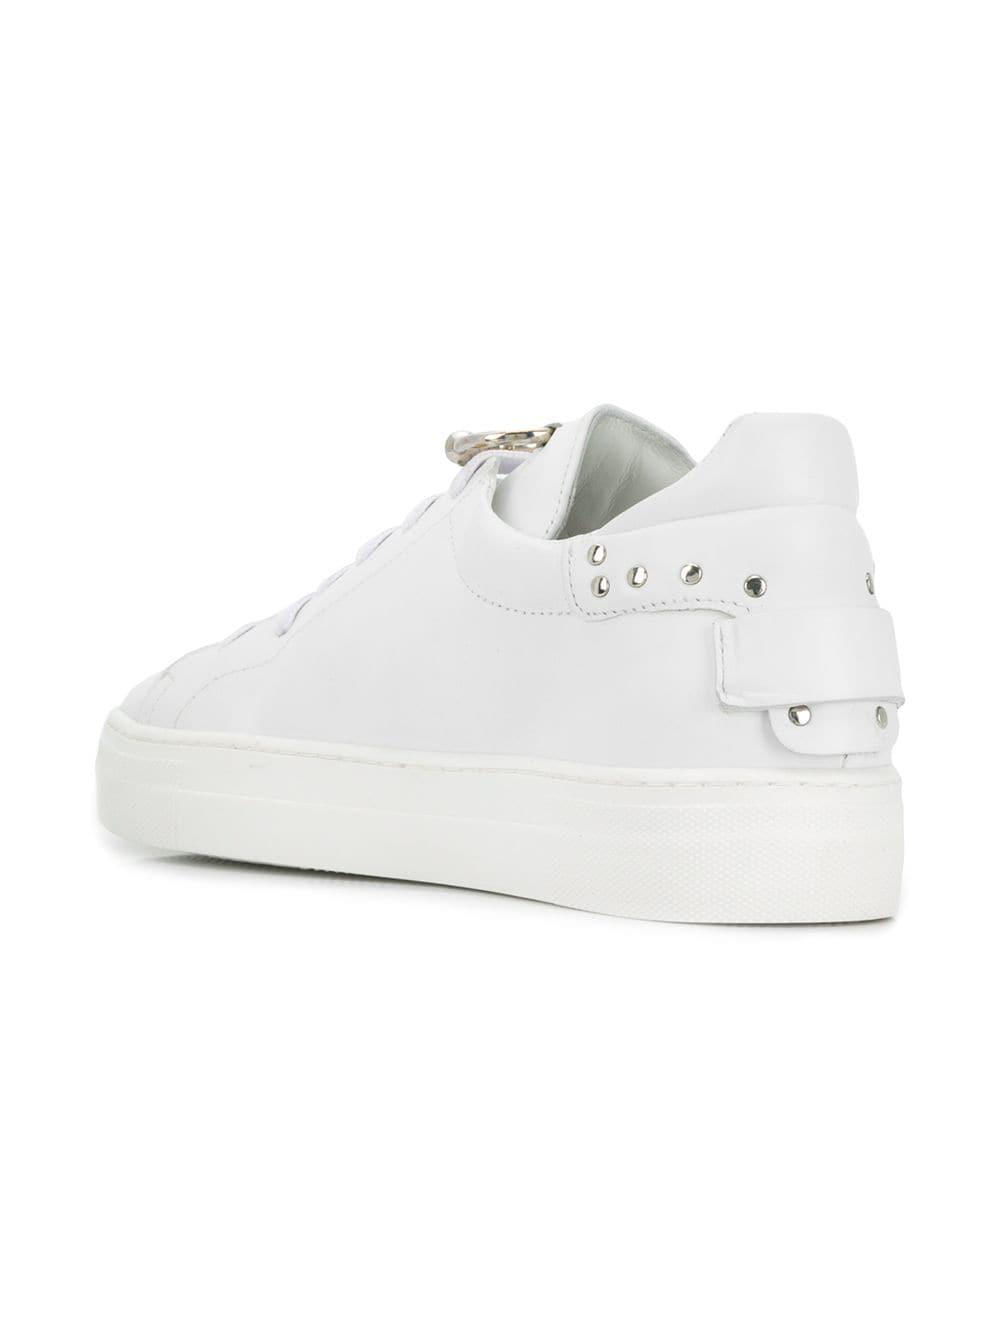 rebecca minkoff white sneakers